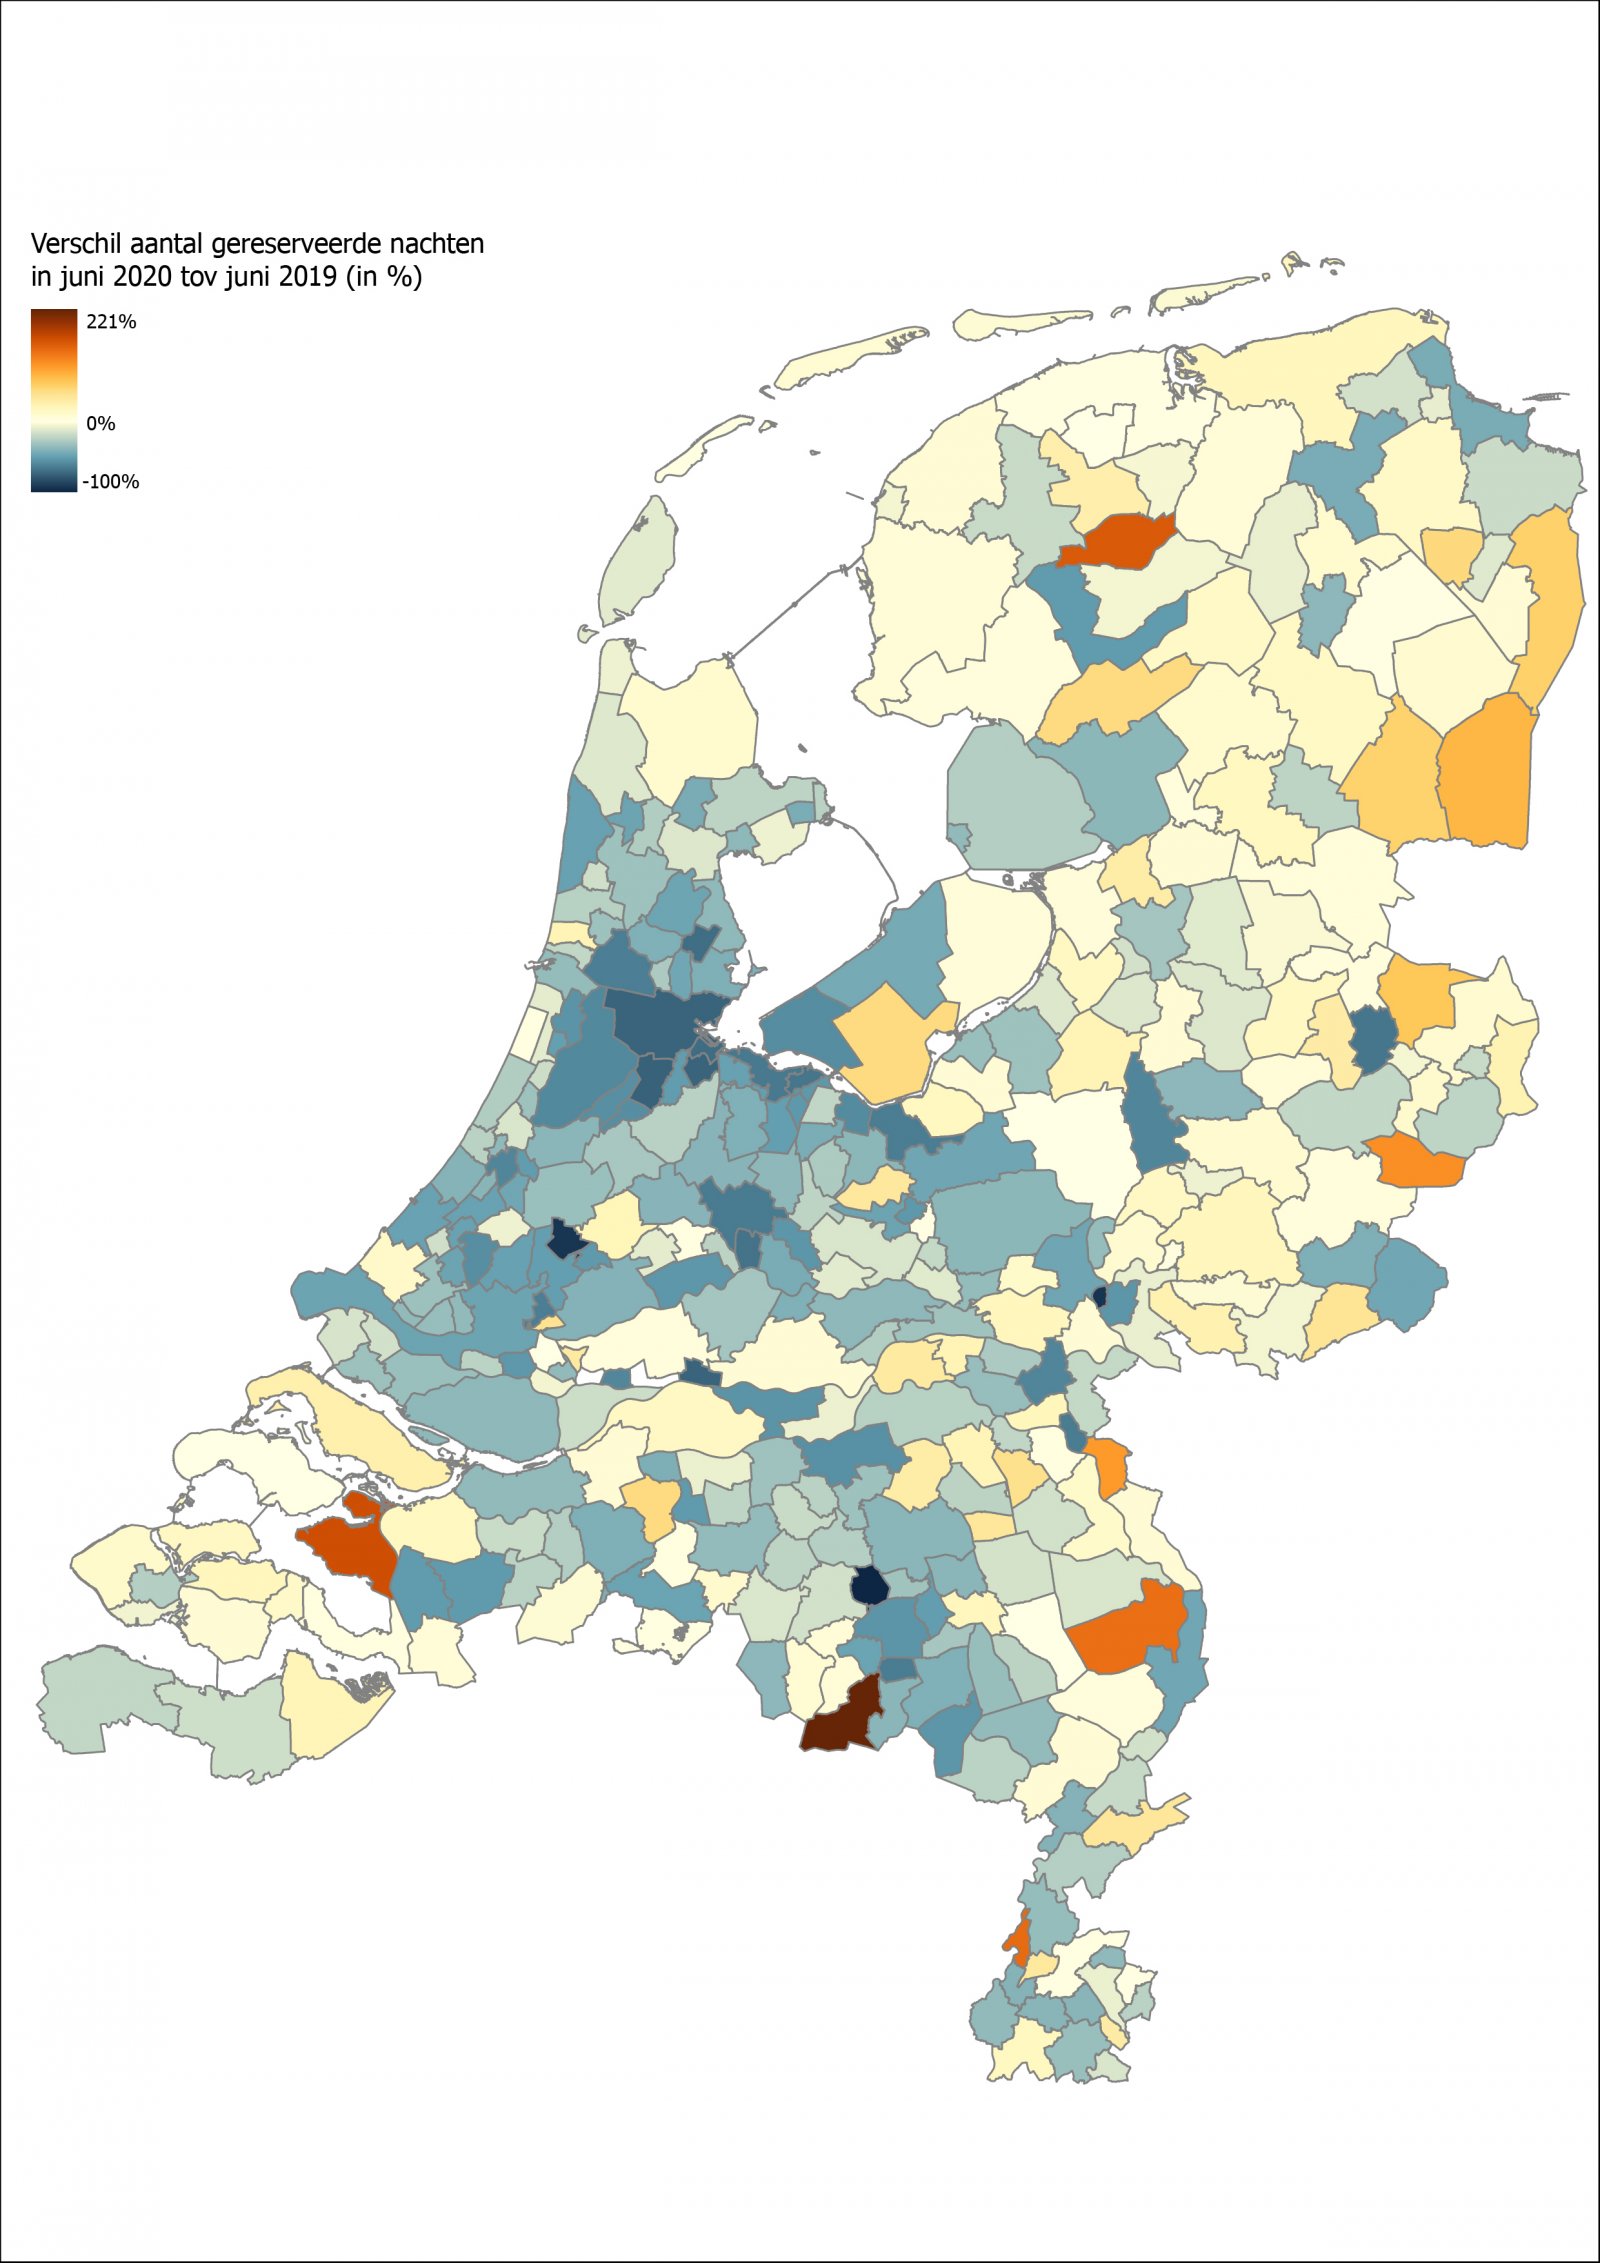 Kaart van Nederland met verschil in aantal gereserveerde nachten in juni 2020 tov juni 20190 